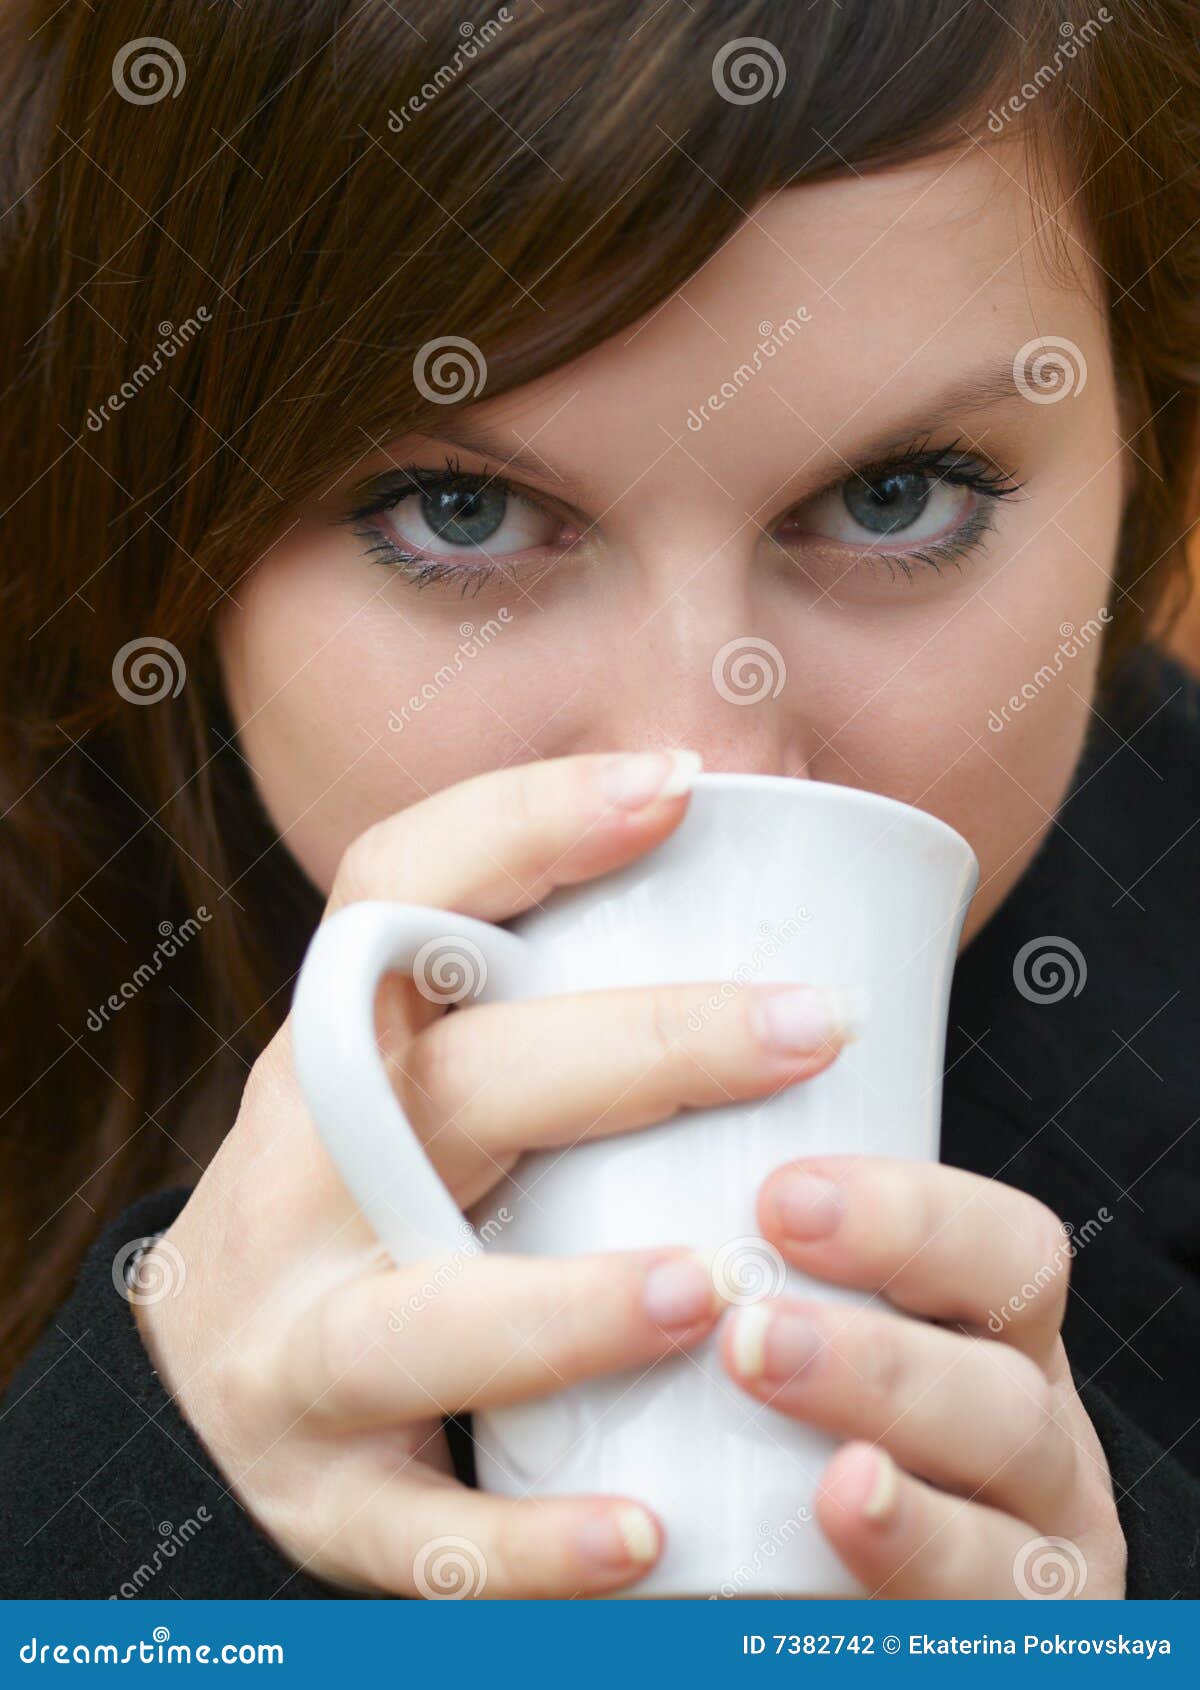 Drinking tea stock photo. Image of aroma, look, beauty - 7382742